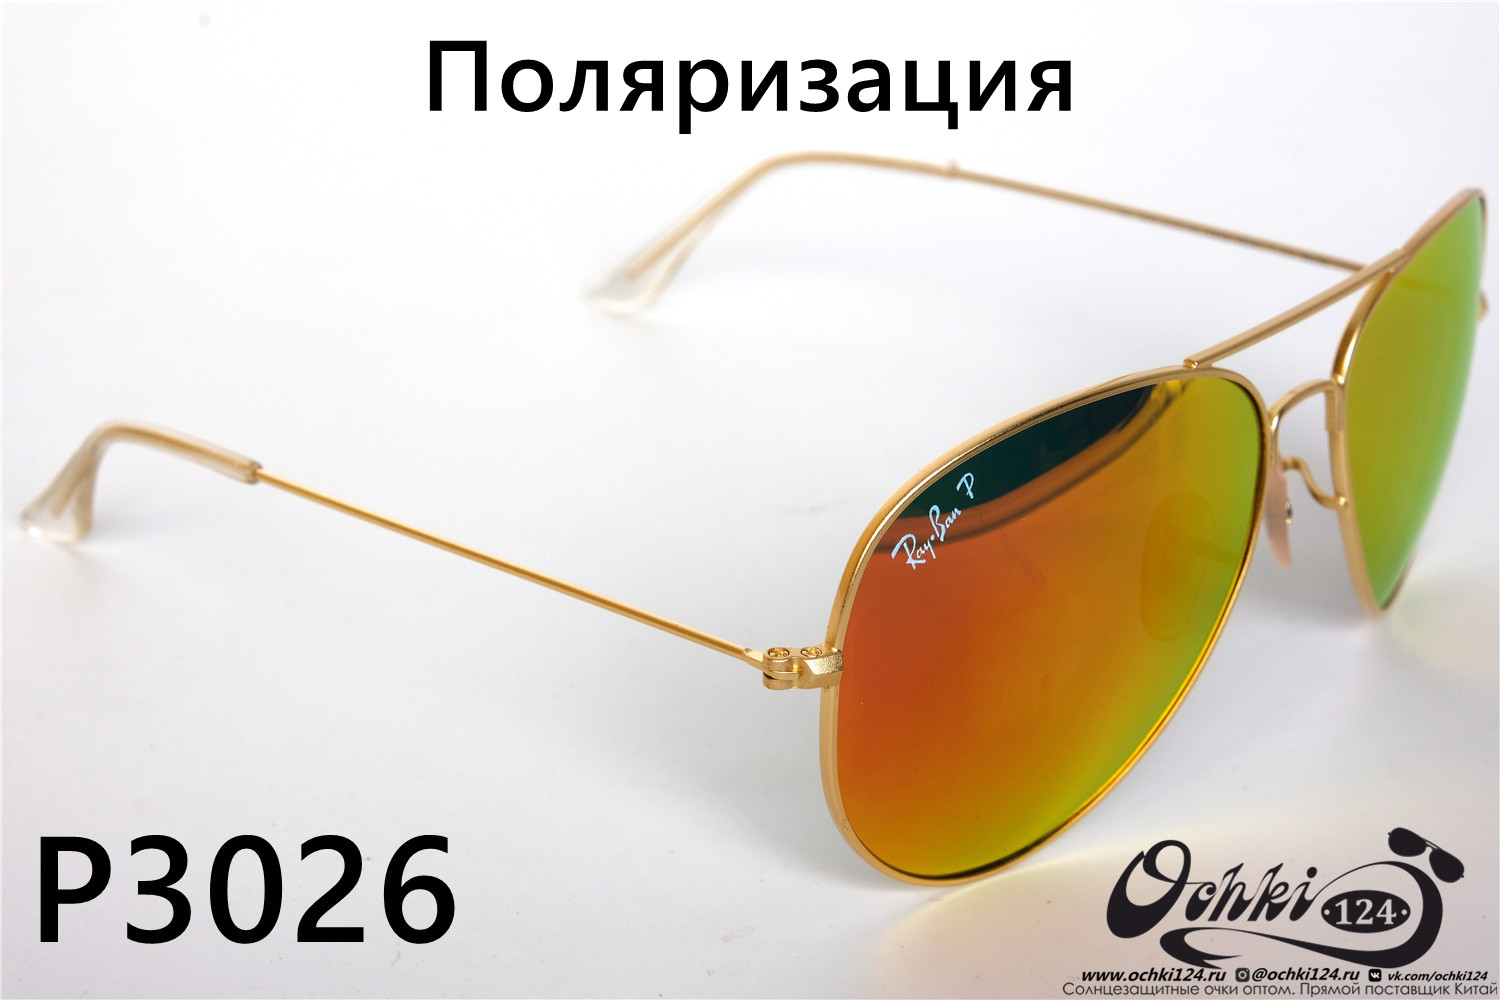  Солнцезащитные очки картинка 2022 Унисекс Поляризованные Авиаторы Rote Sonne P3026-26 